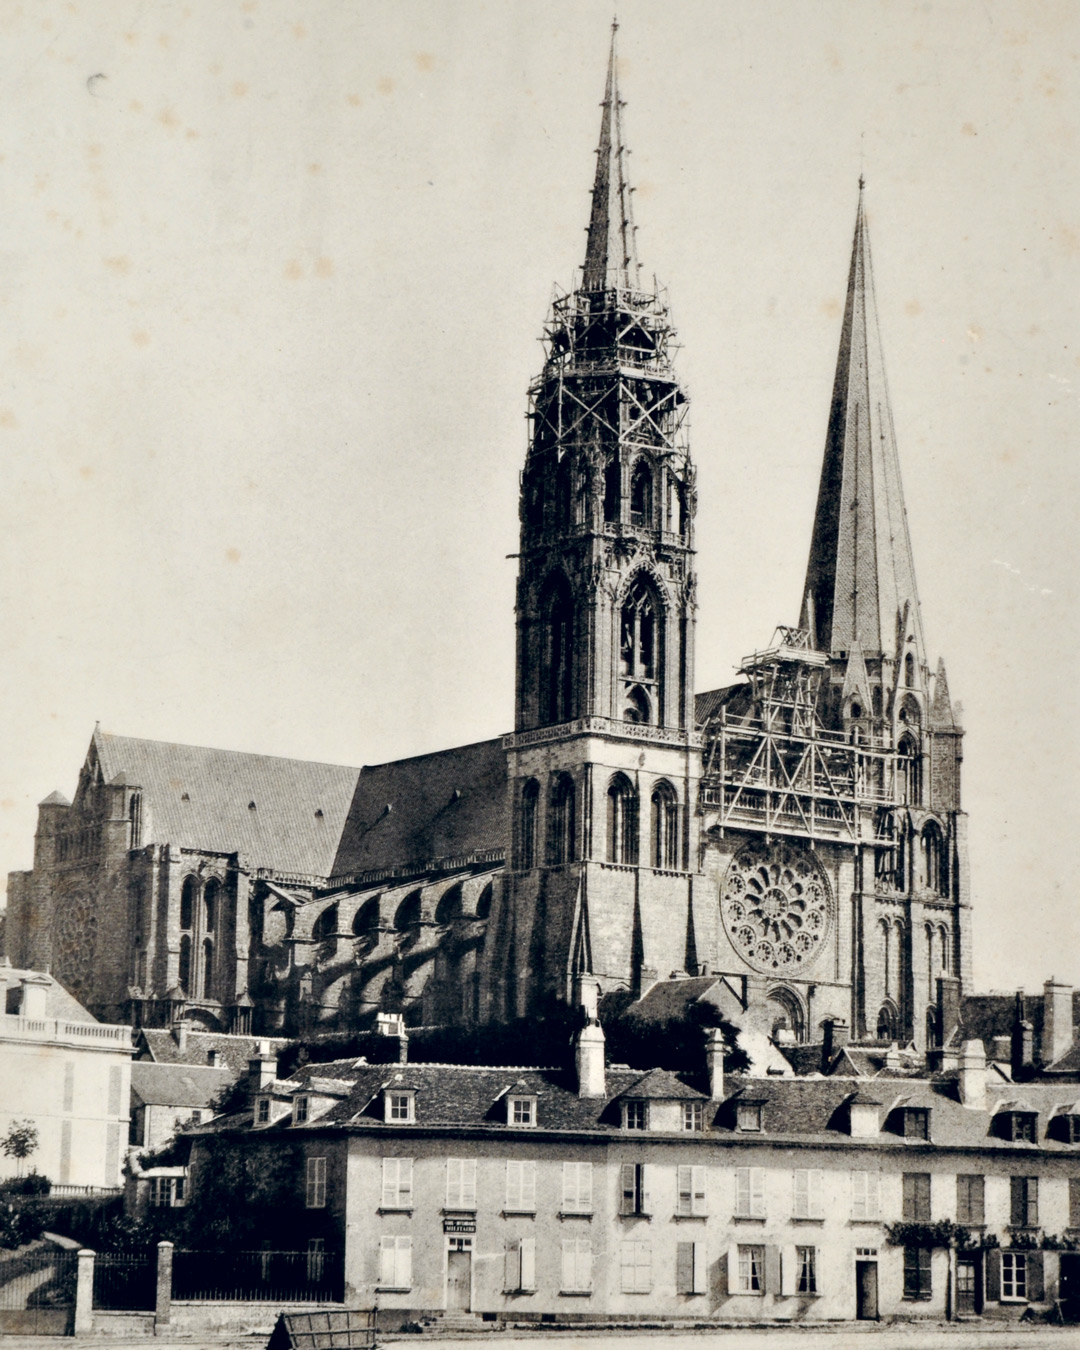 Incendie de 1836 : la cathédrale restaurée, photo de Lesecq en 1852, échafaudages pour travaux complémentaires – Ville de Chartres